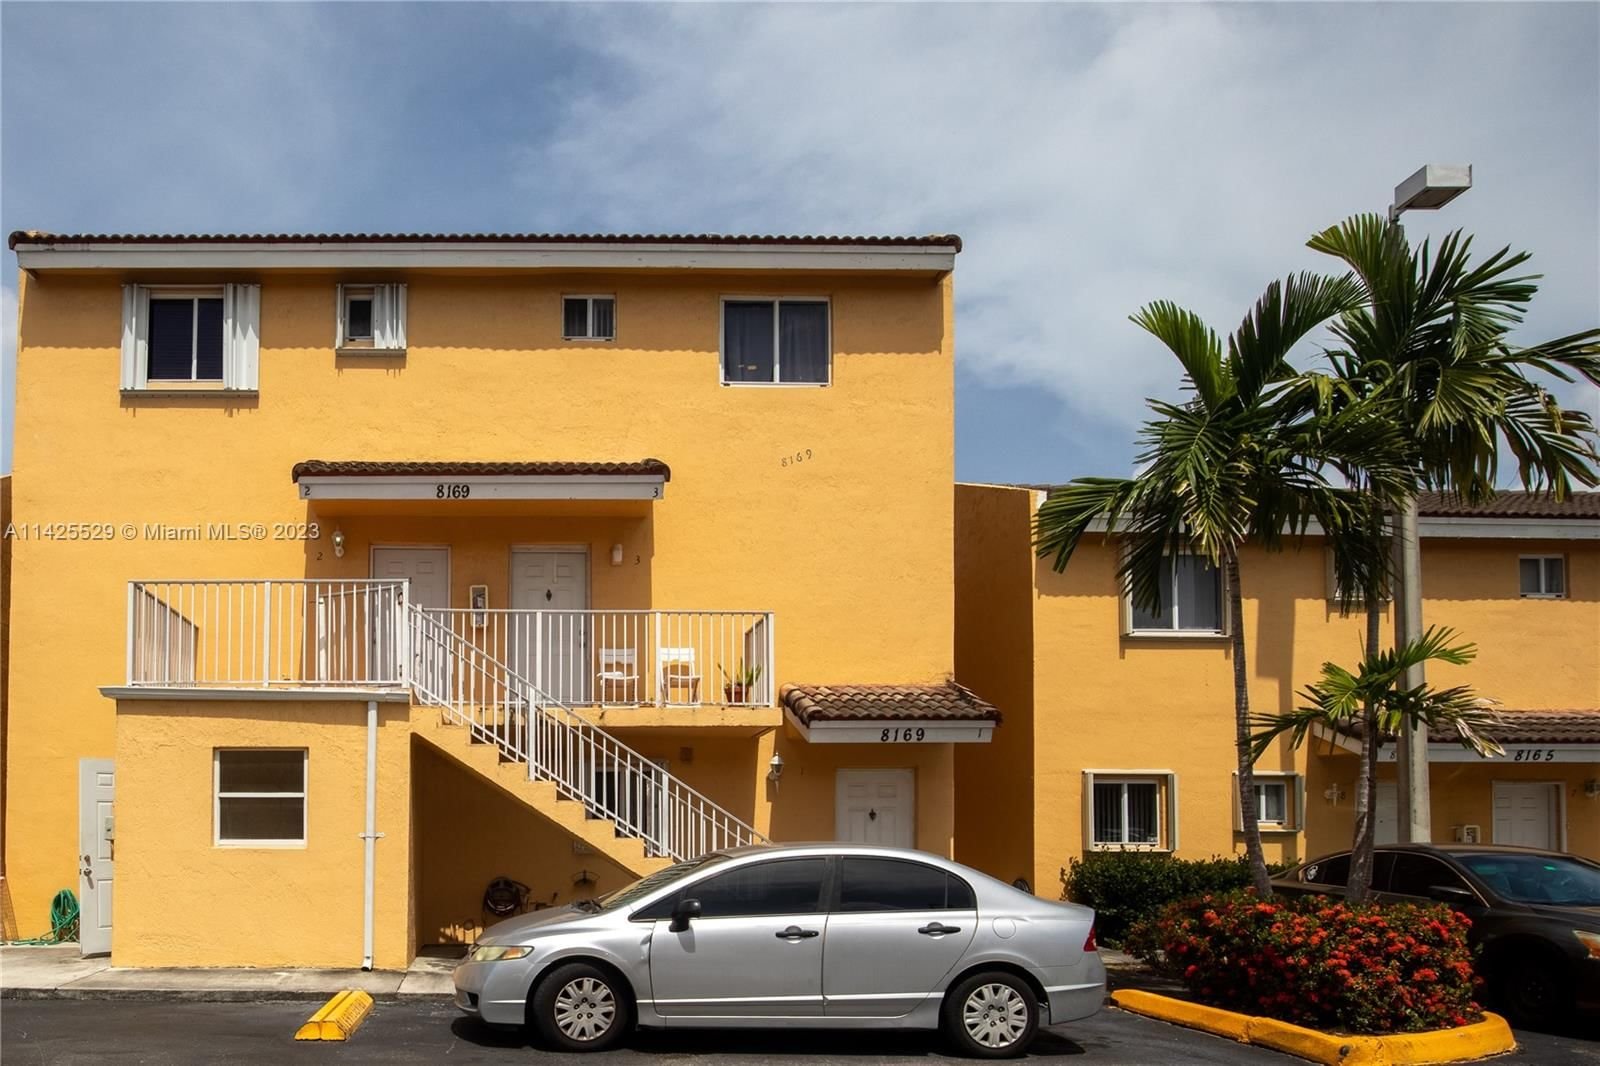 Real estate property located at 8169 8th St #2, Miami-Dade County, GRACE VILLAS CONDO, Miami, FL